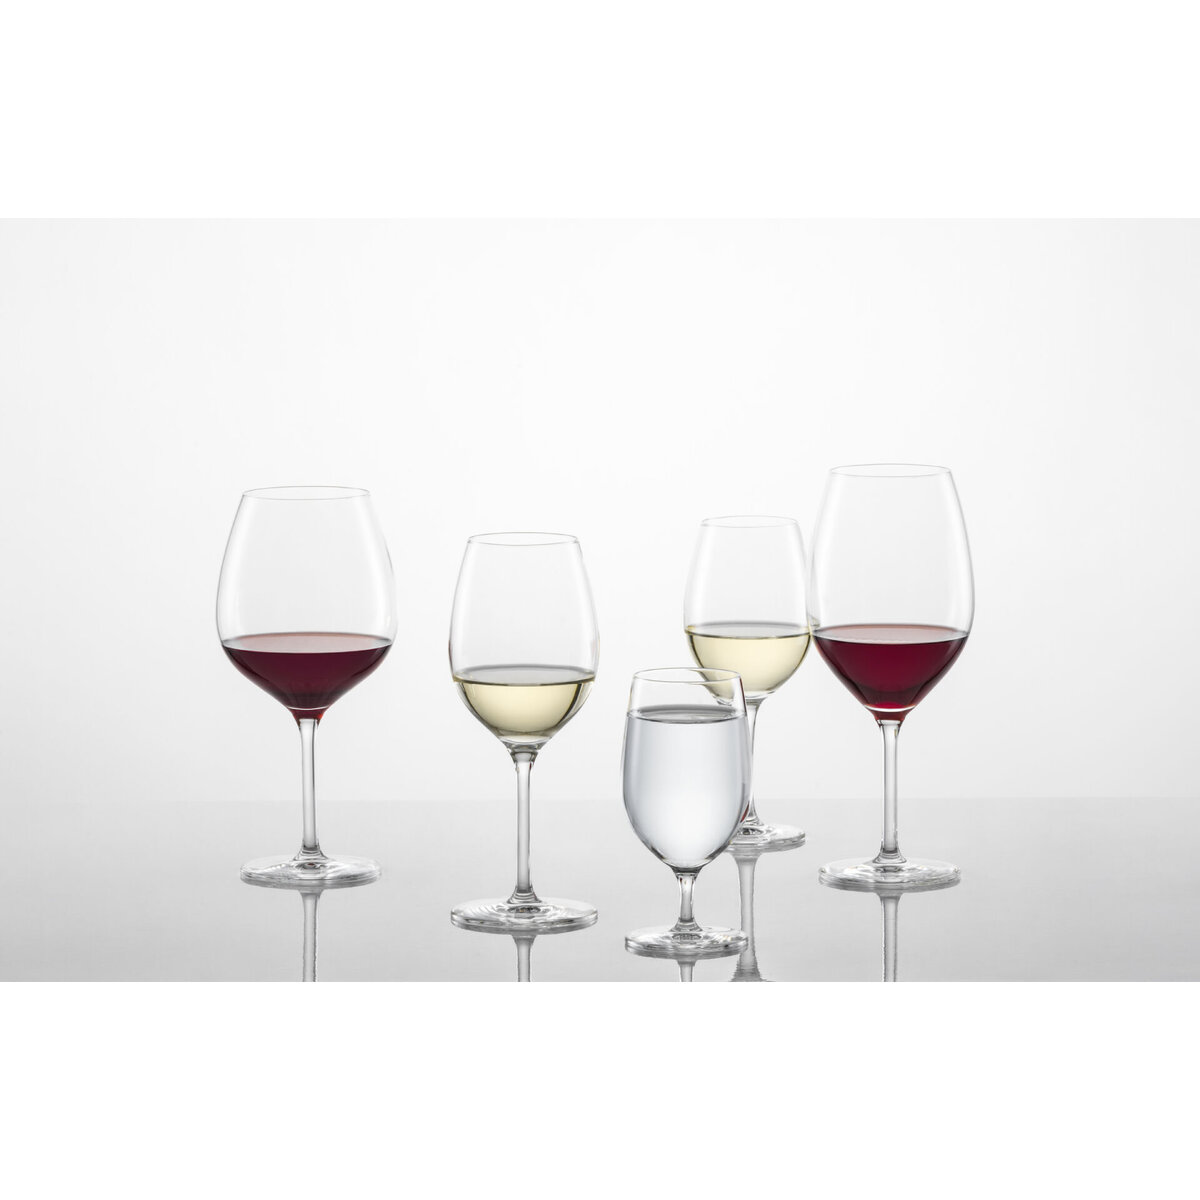 Glasserie "Banquet" Rotweinglas 475ml mit Füllstrich (2)